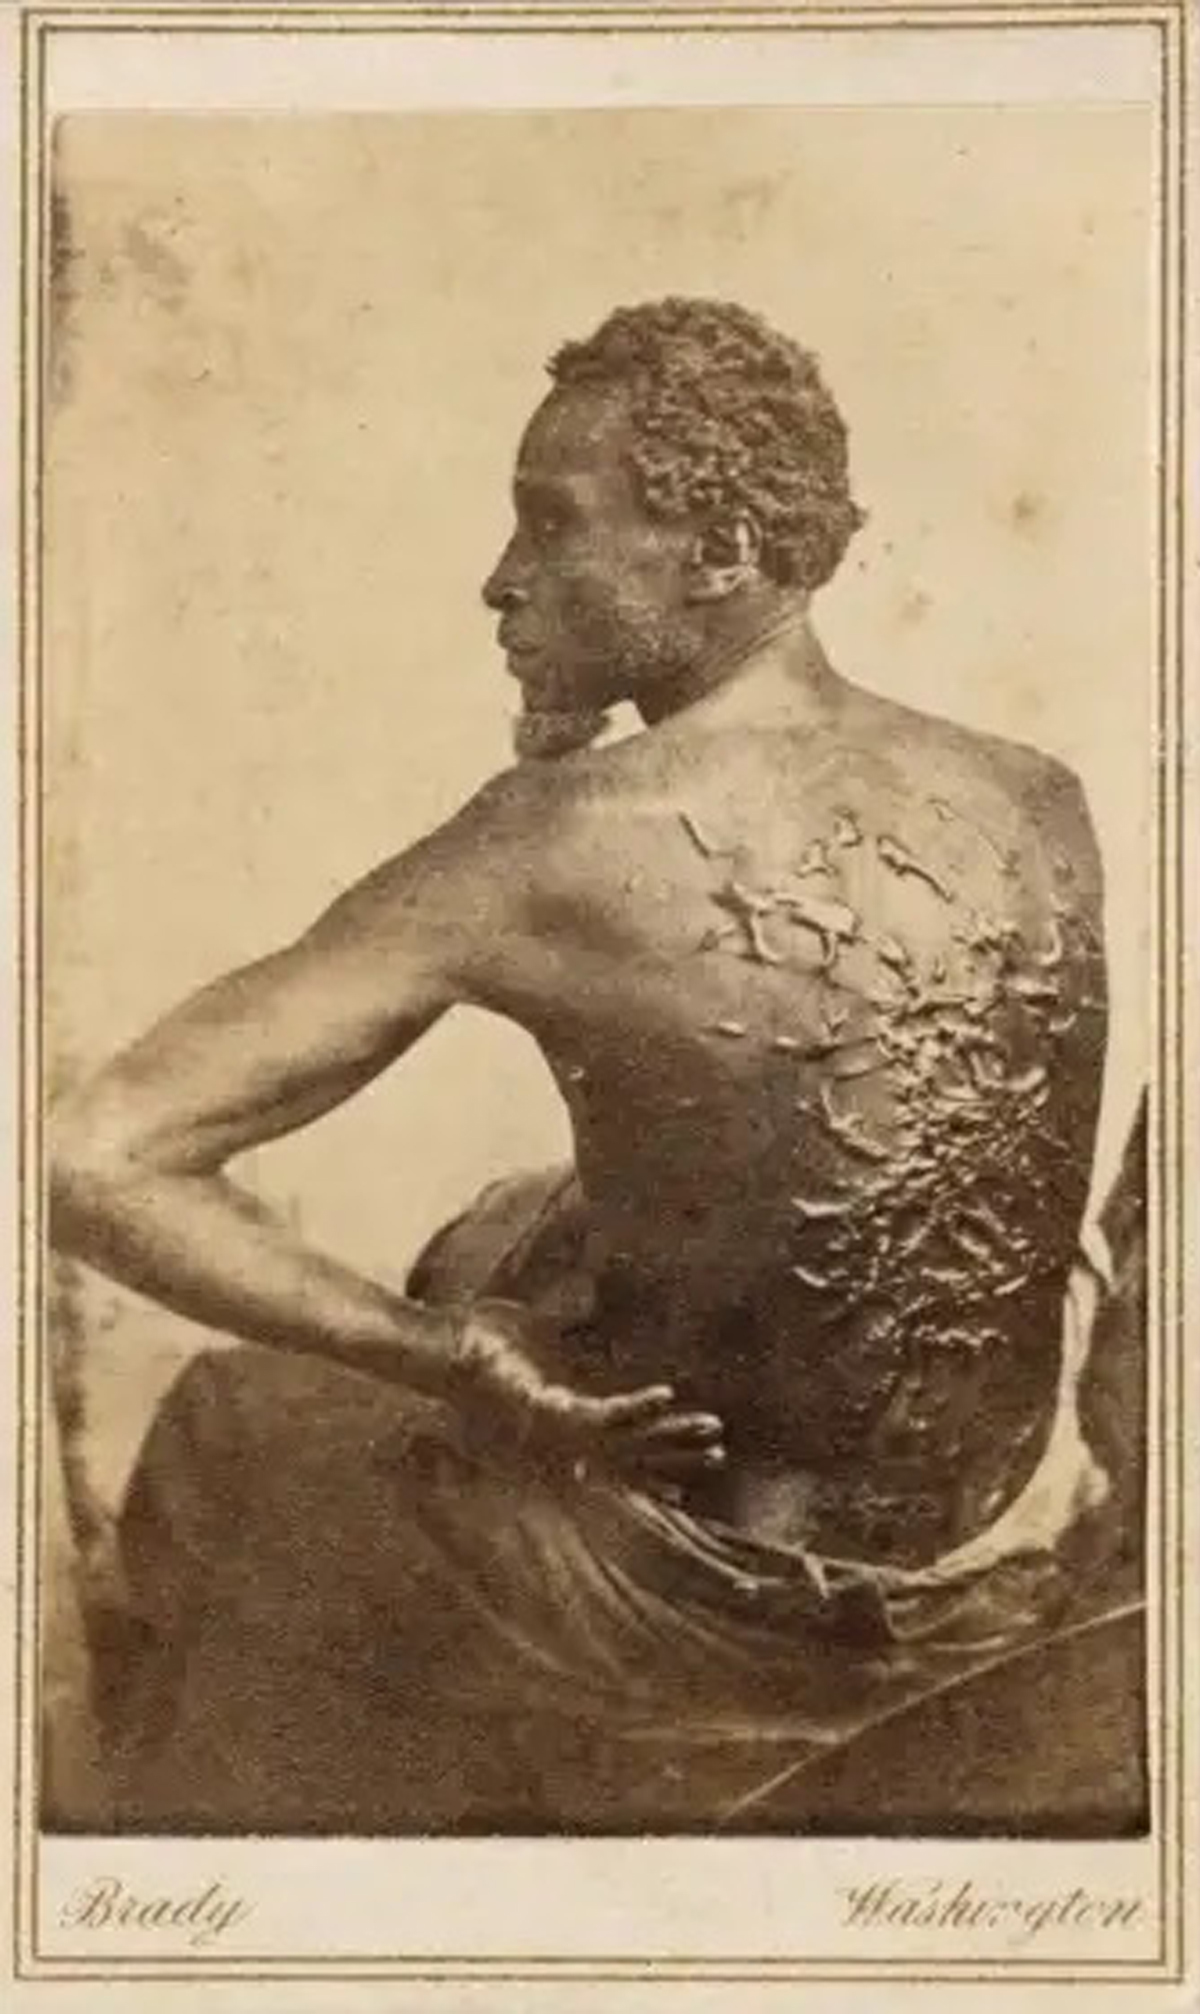 Las fotos mostrando las cicatrices en la espalda de Gordon 'Peter Azotado', producto de los latigazos de sus dueños, alentaron a miles de negros libres a alistarse con los unionistas y combatir contra las tropas sureñas.